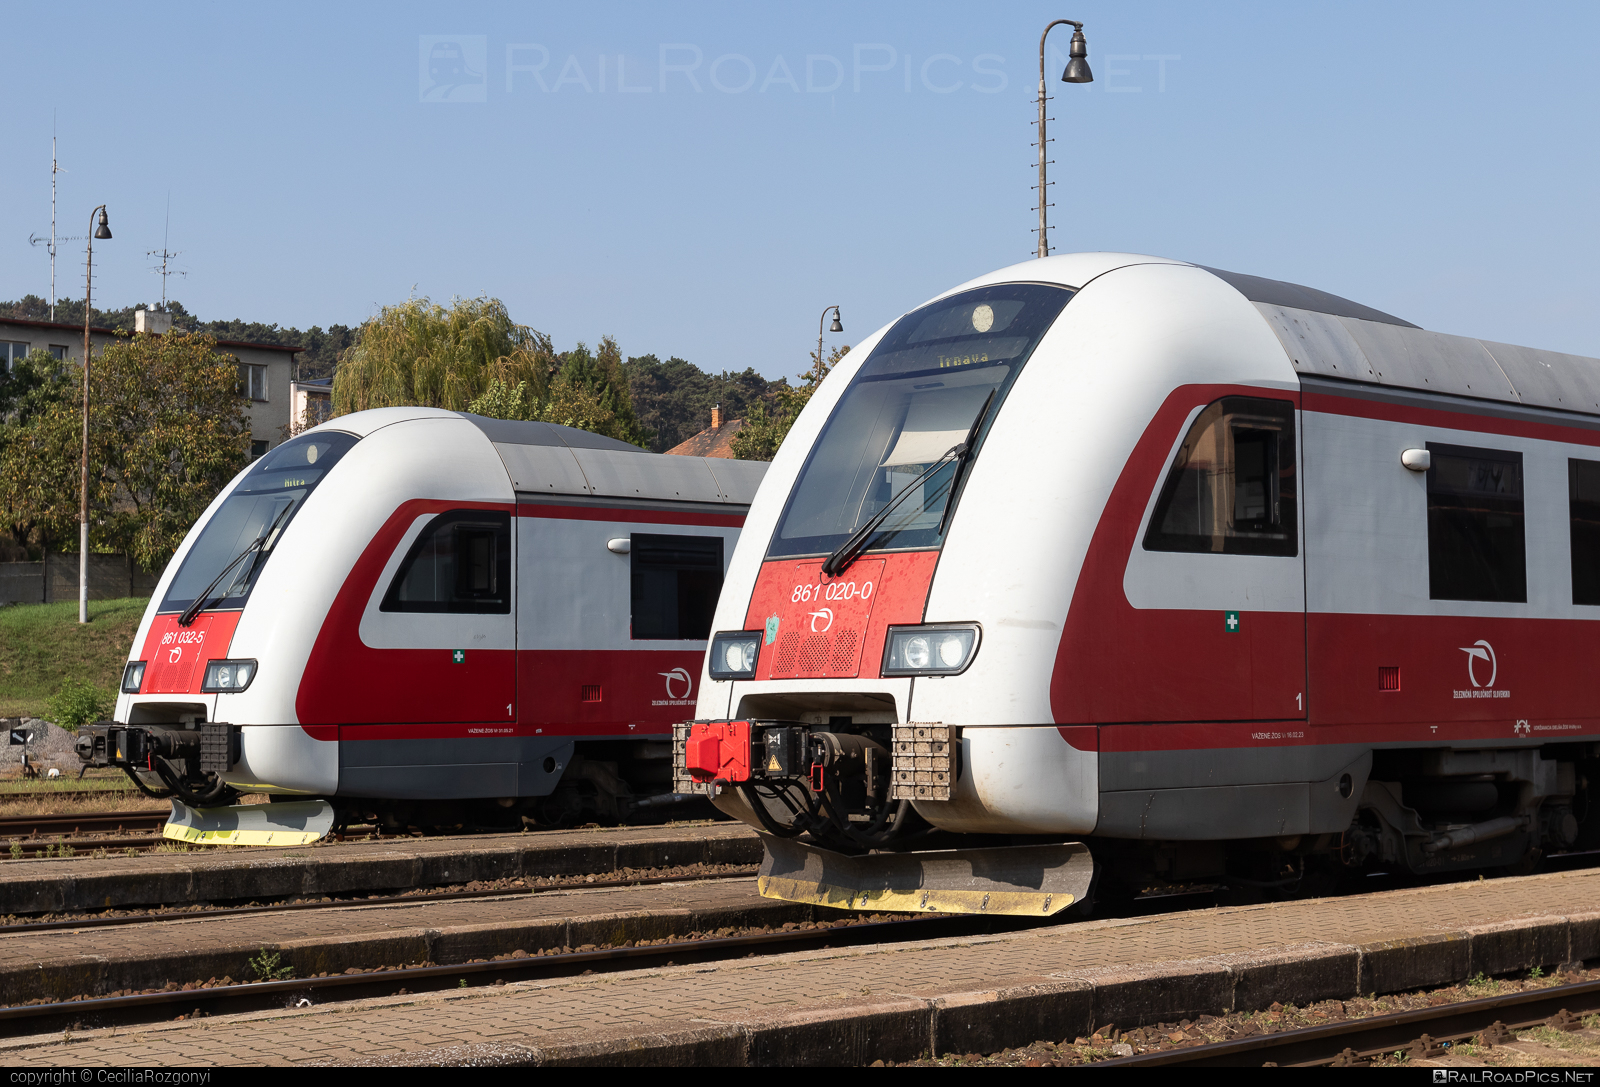 ŽOS Vrútky Class 861.0 - 861 020-0 operated by Železničná Spoločnost' Slovensko, a.s. #ZeleznicnaSpolocnostSlovensko #dunihlav #husenica #zosvrutky #zosvrutky861 #zosvrutky8610 #zssk #zssk861 #zssk8610